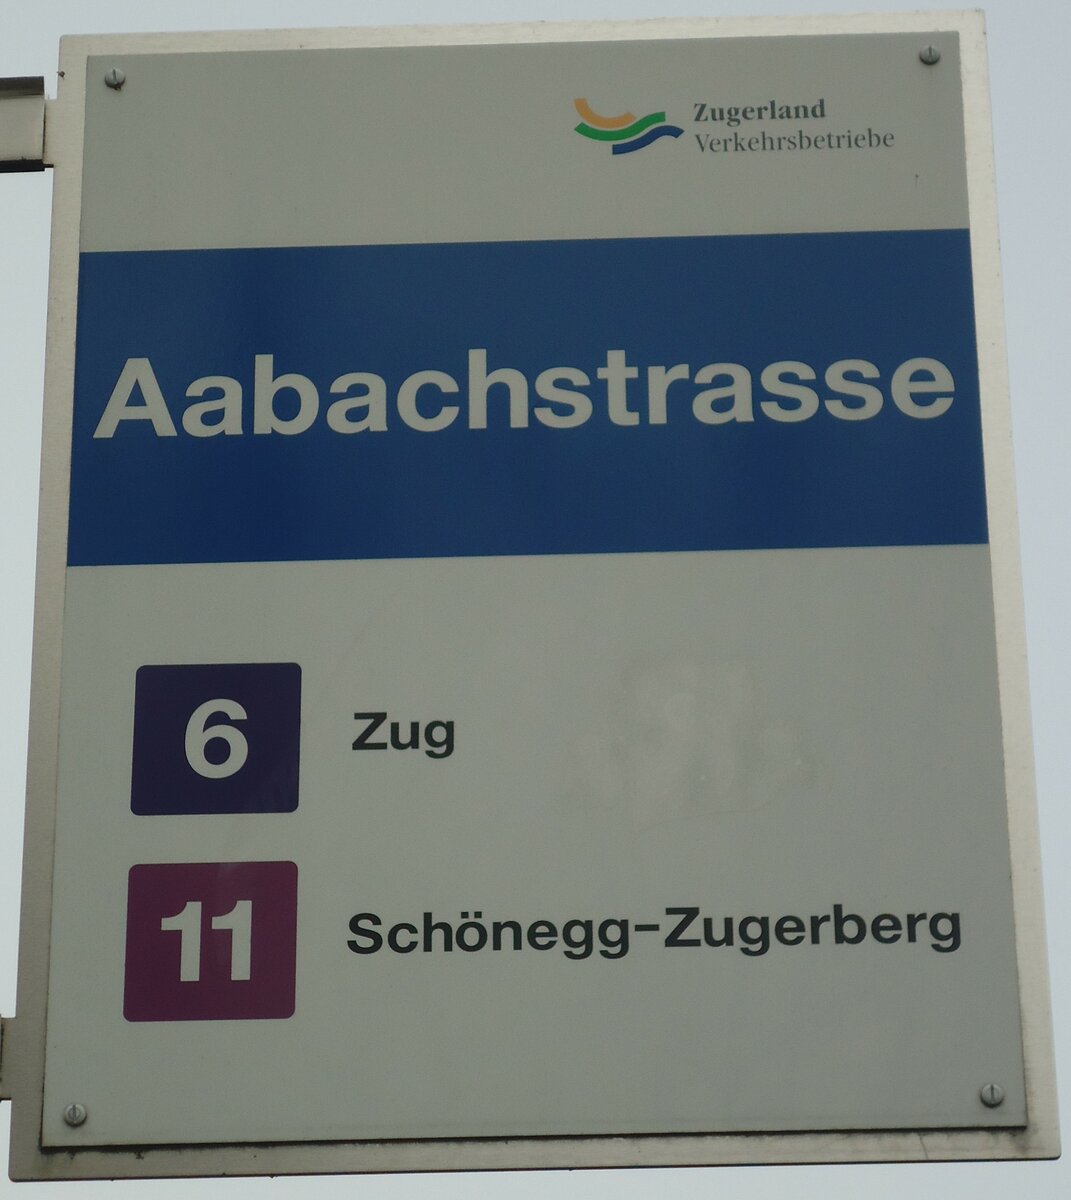 (138'014) - Zugerland Verkehrsbetriebe-Haltestellenschild - Zug, Aabachstrasse - am 6. Mrz 2012